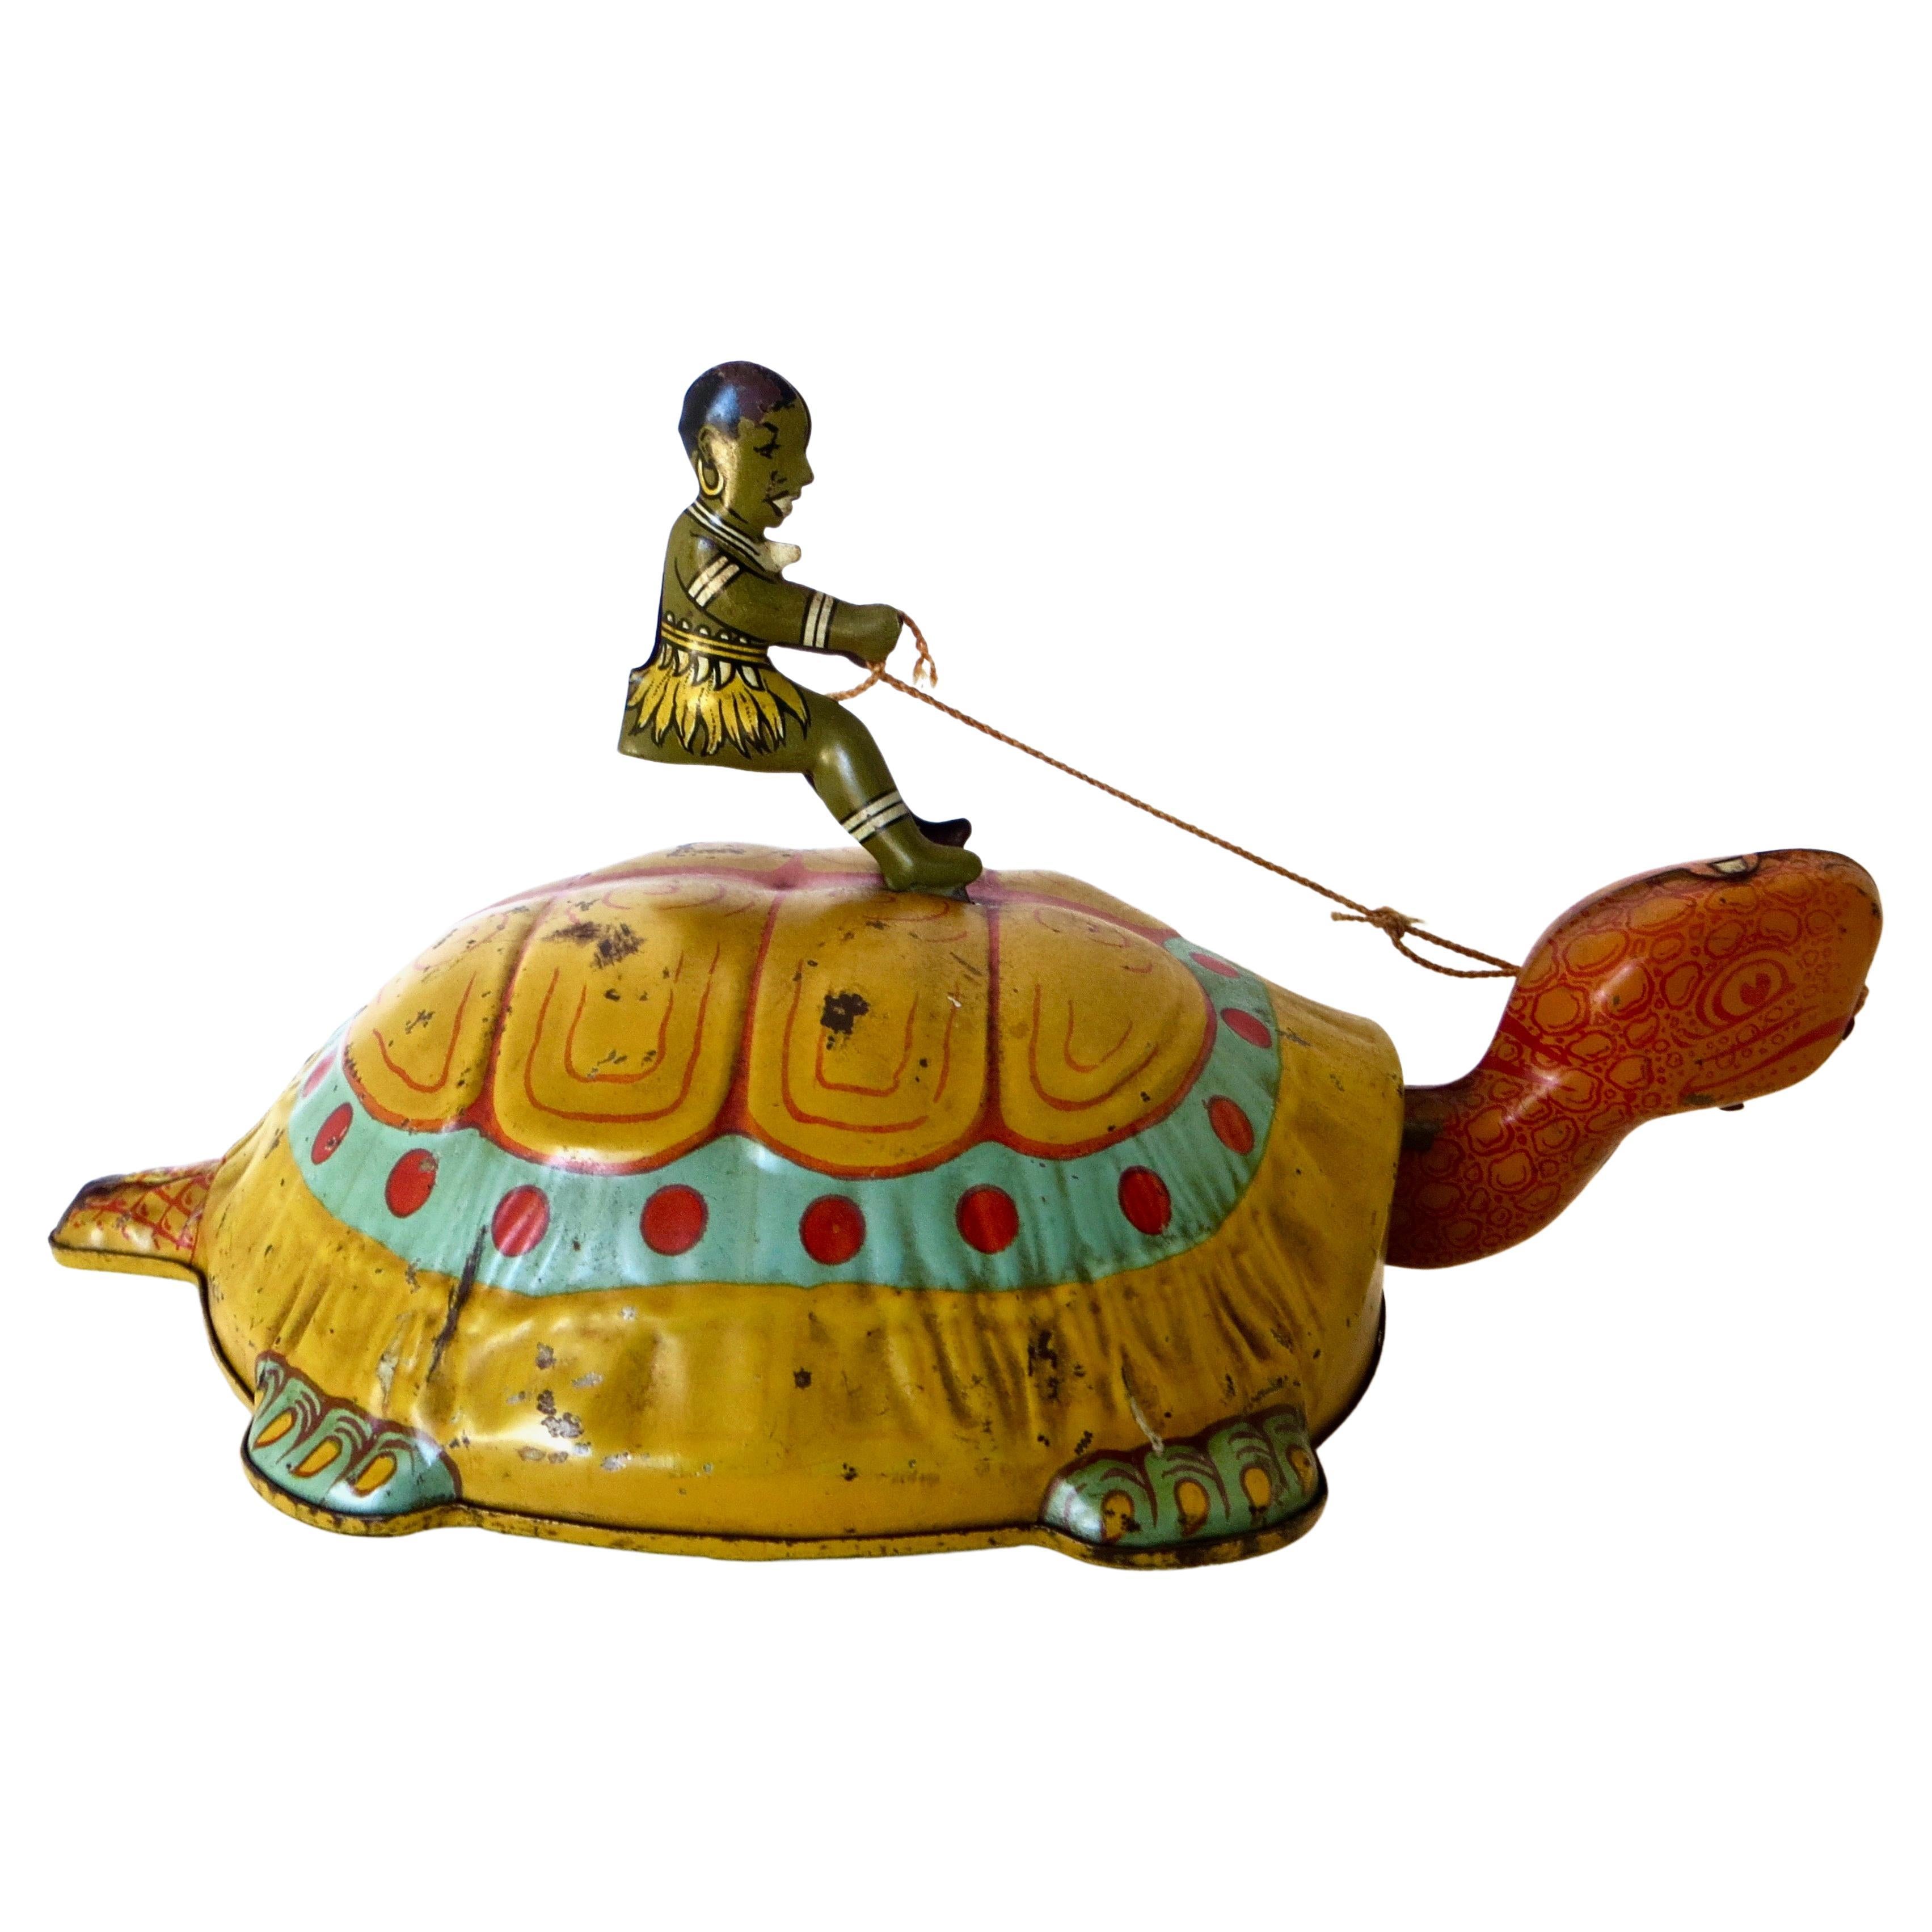 Juguete de cuerda "Niño montado en una tortuga"; por J. Chein, hacia 1930